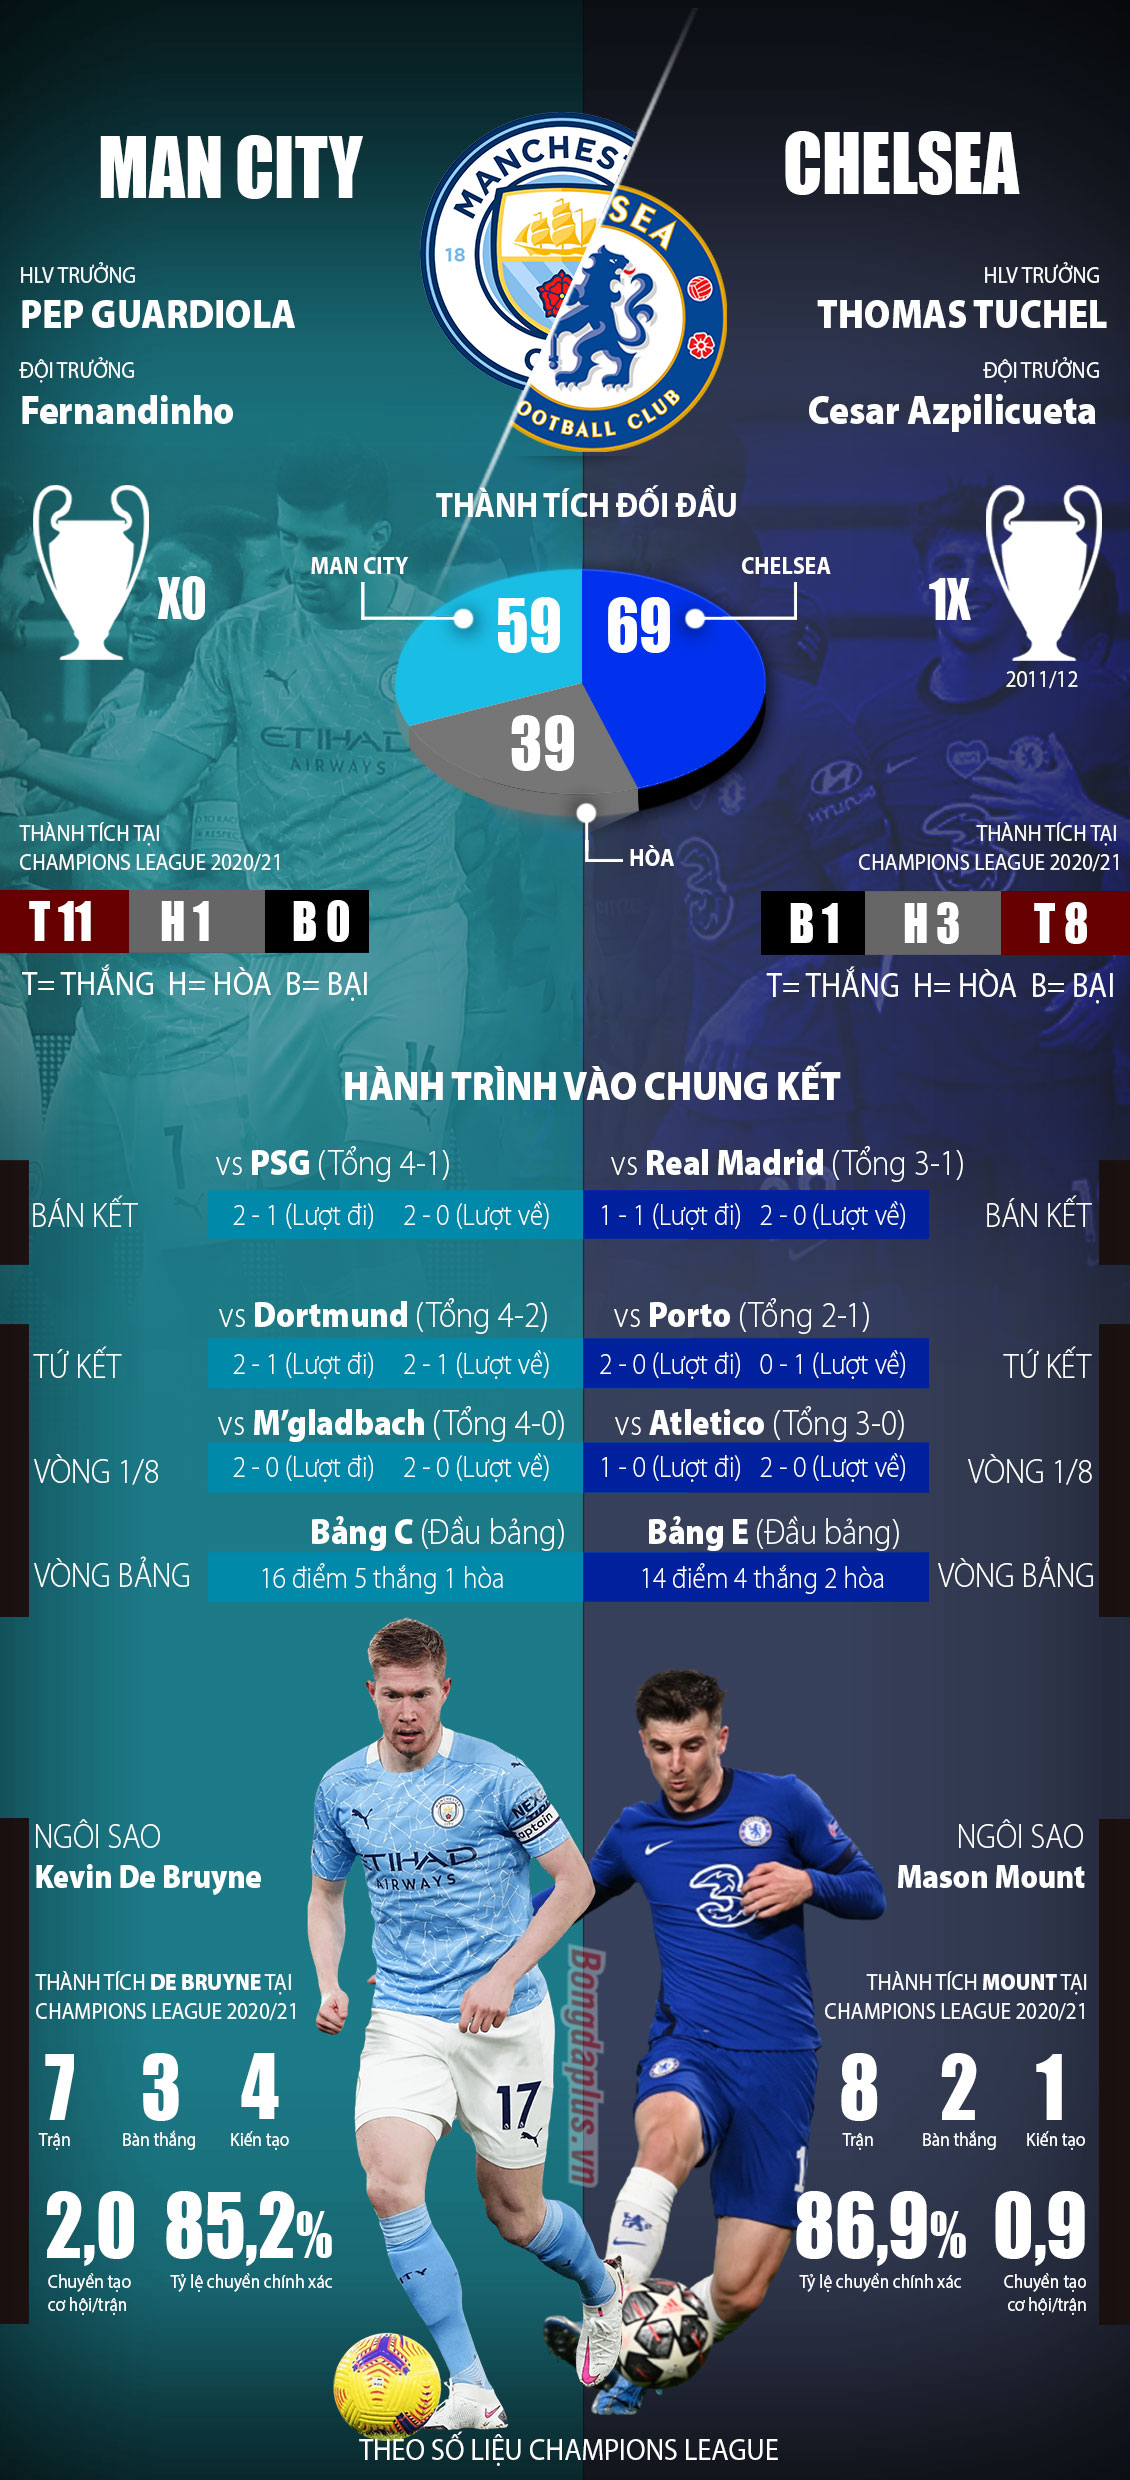 Man City vs Chelsea: Hành trình vào chung kết Champions League 2020/21